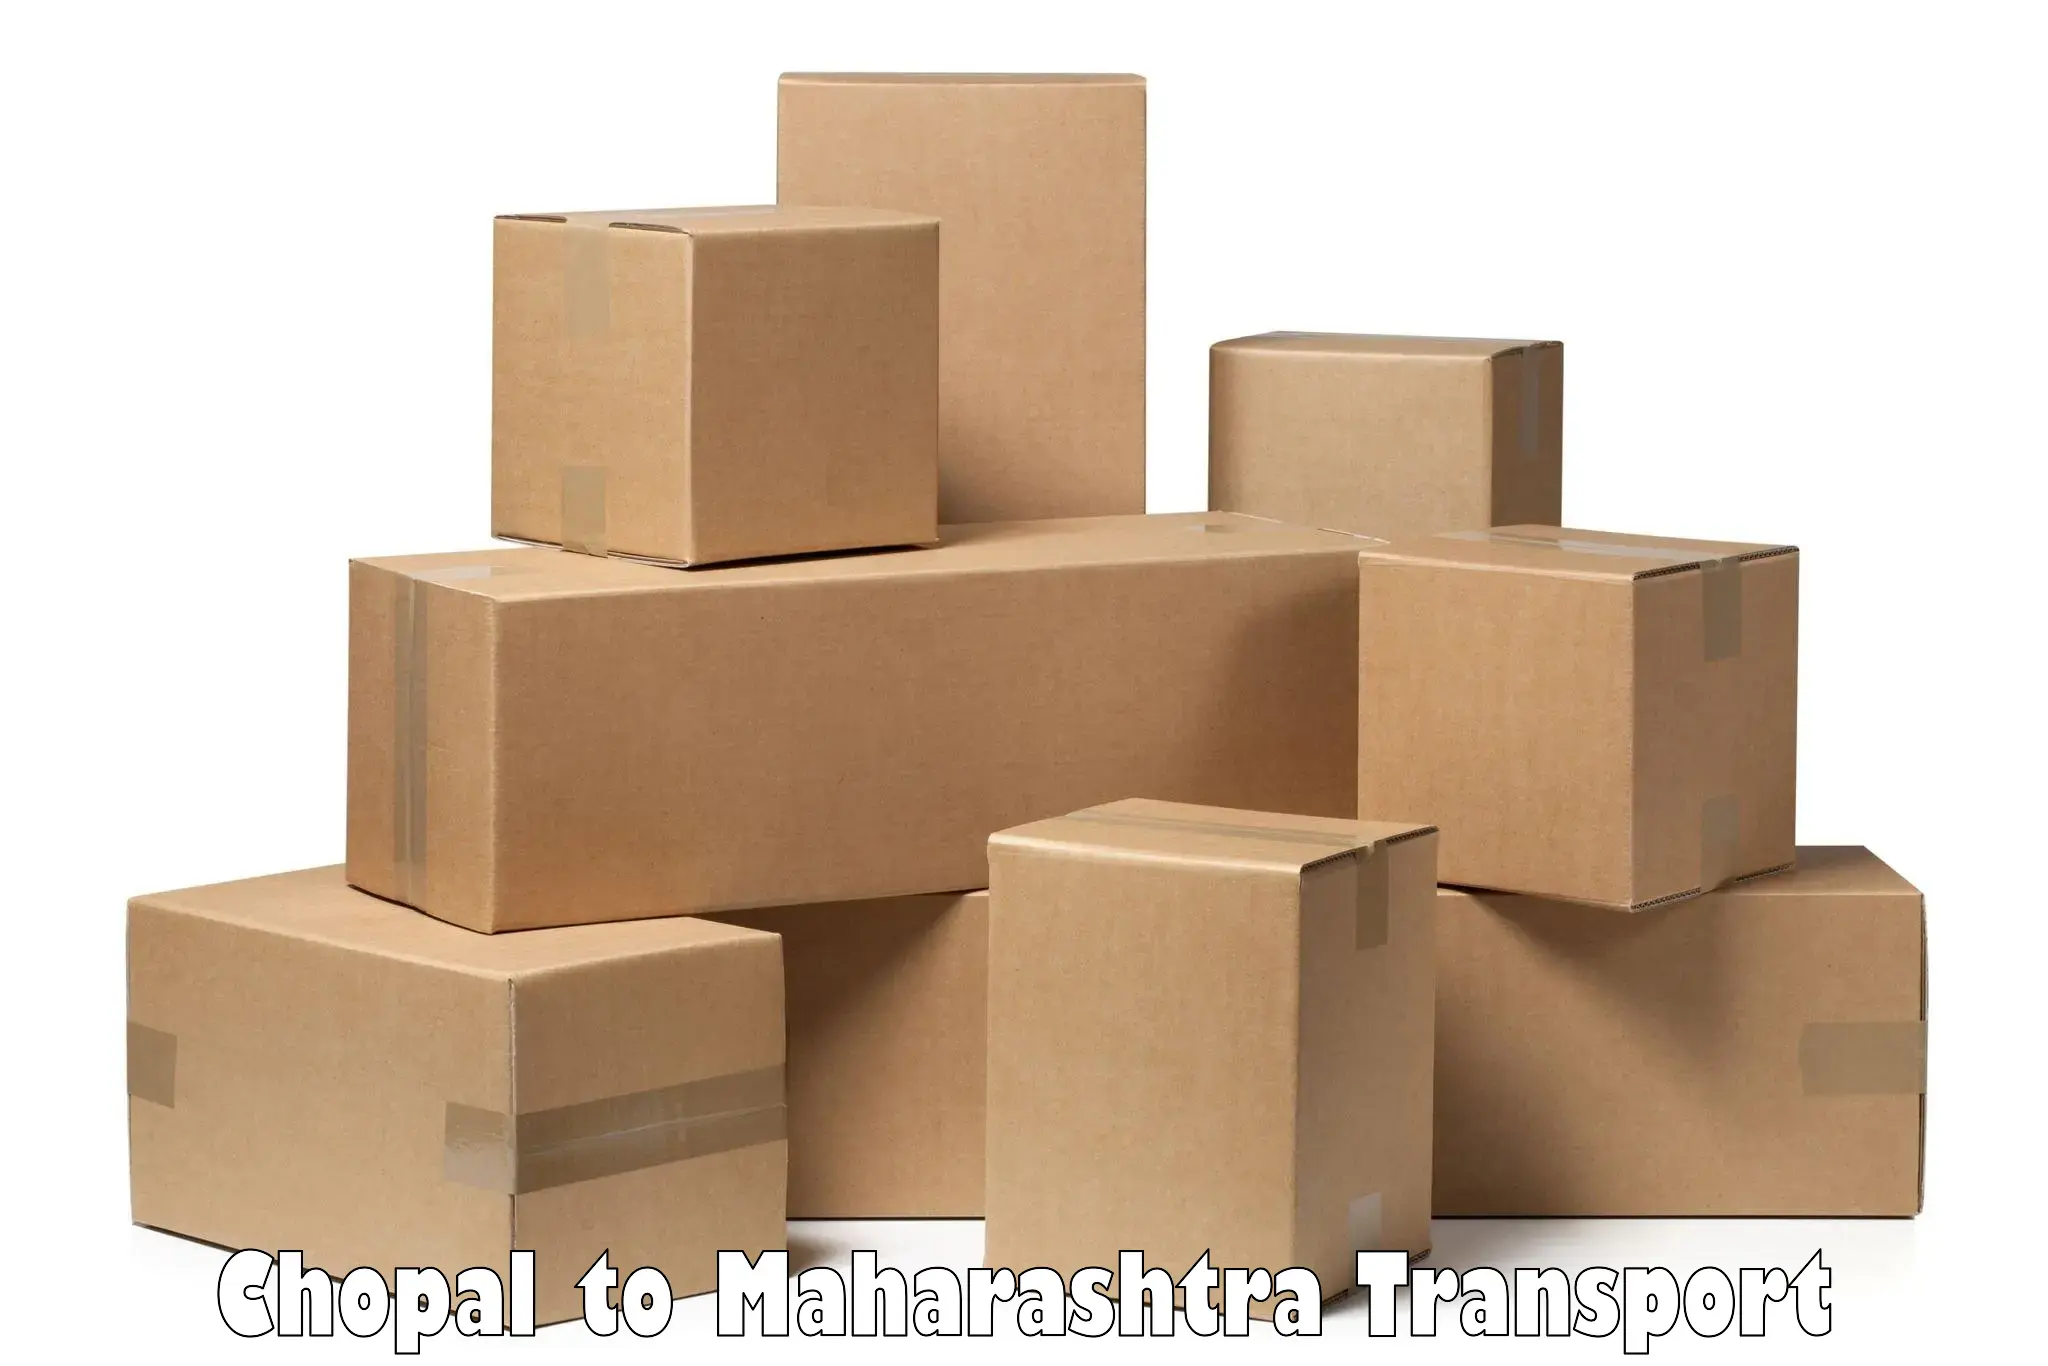 Logistics transportation services Chopal to Latur